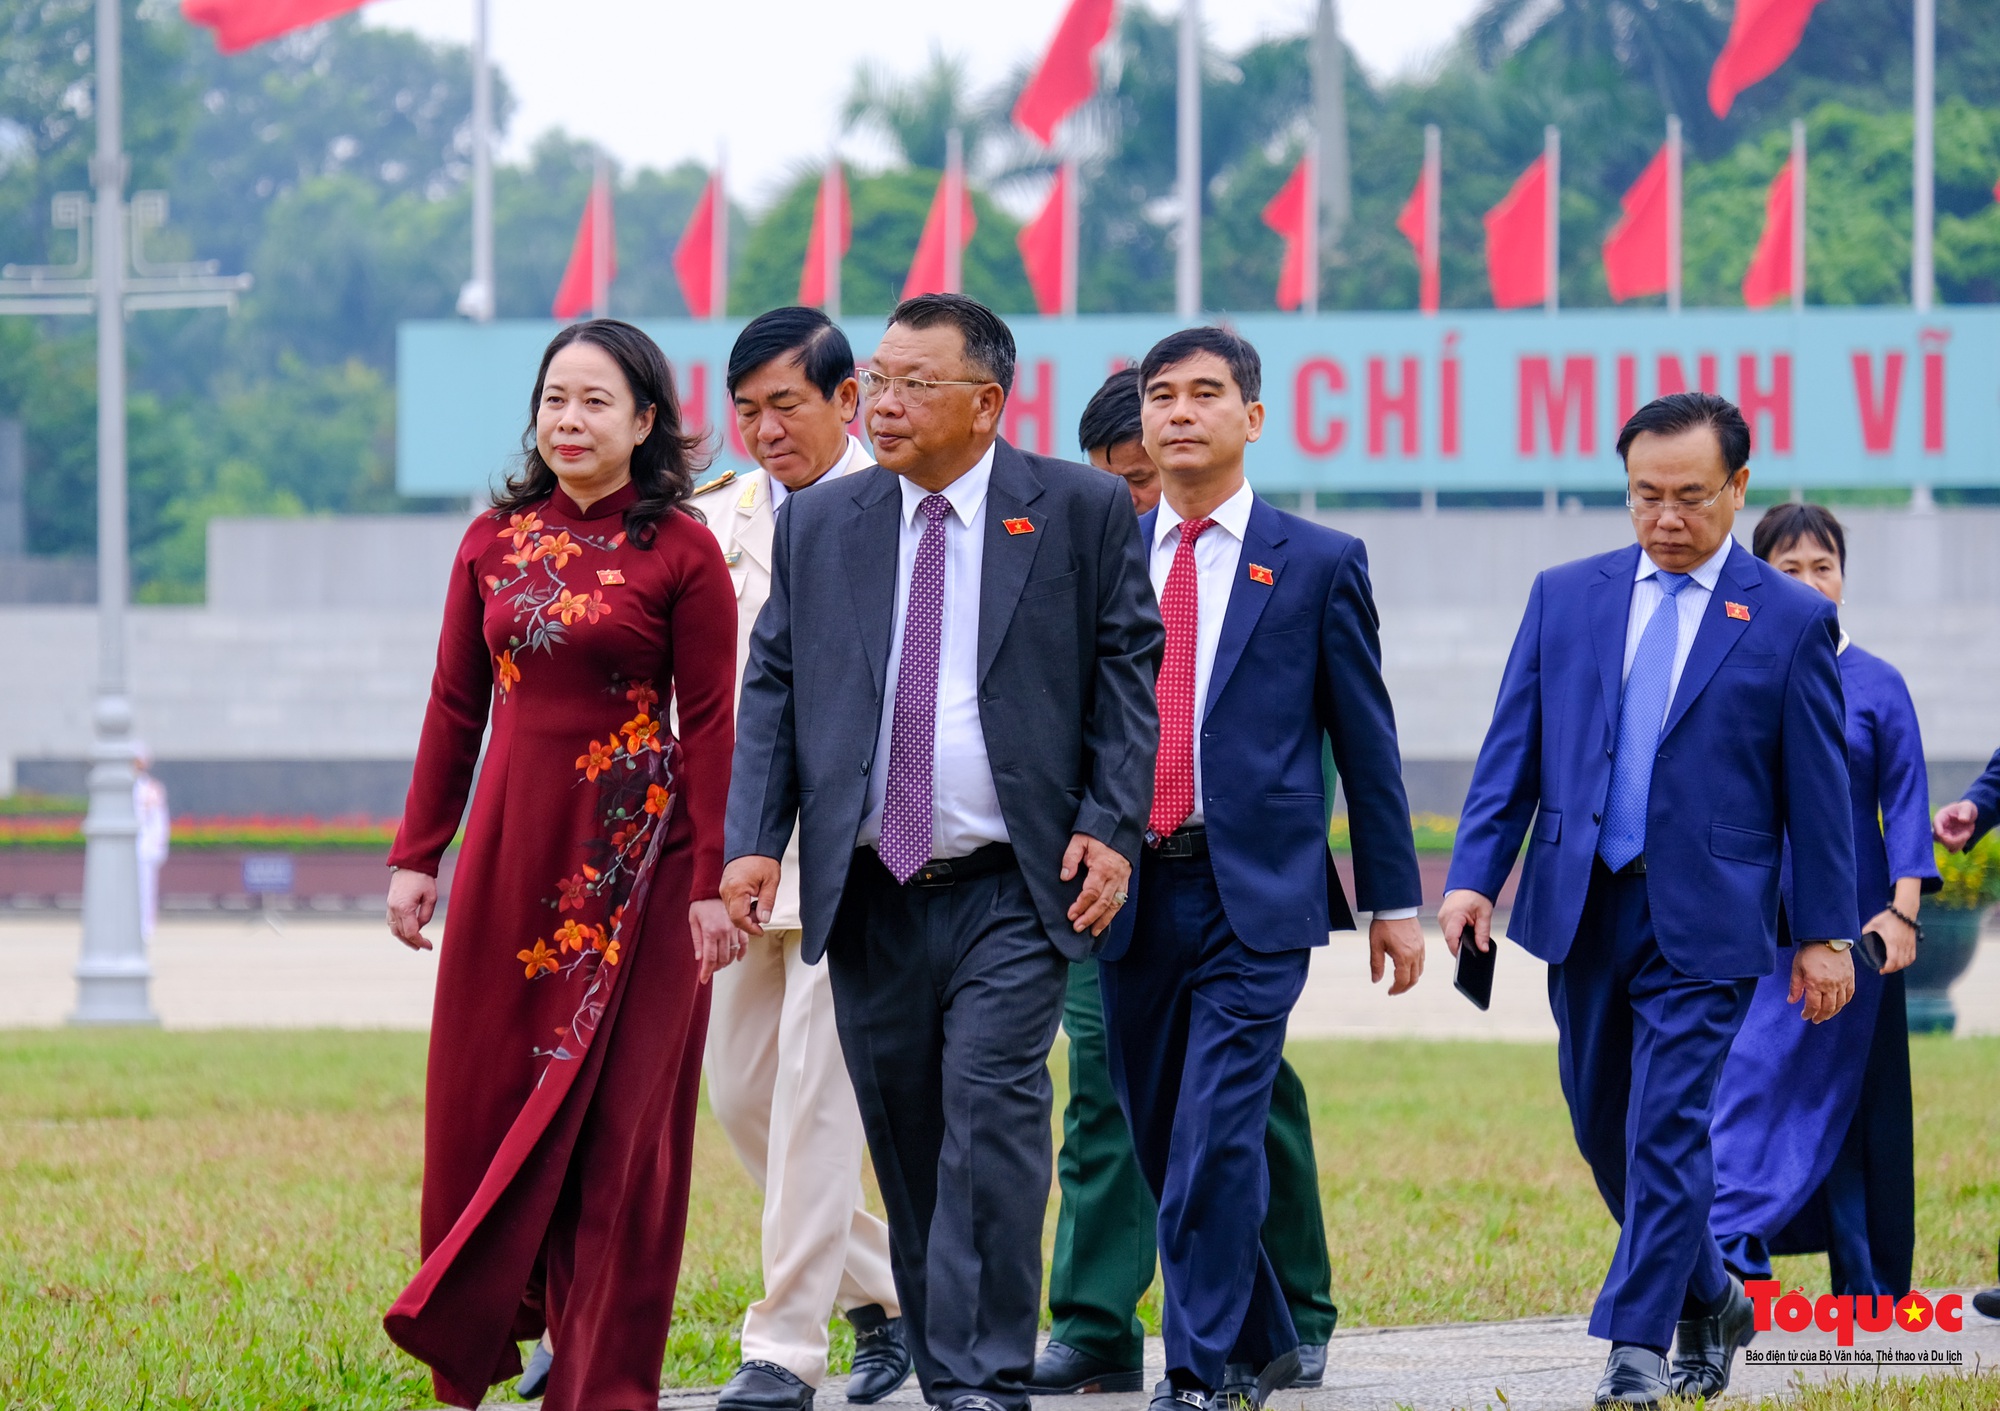 Lãnh đạo Đảng, Nhà nước và đại biểu Quốc hội viếng Chủ tịch Hồ Chí Minh trước khai mạc Kỳ 6 Quốc hội khóa XV - Ảnh 10.